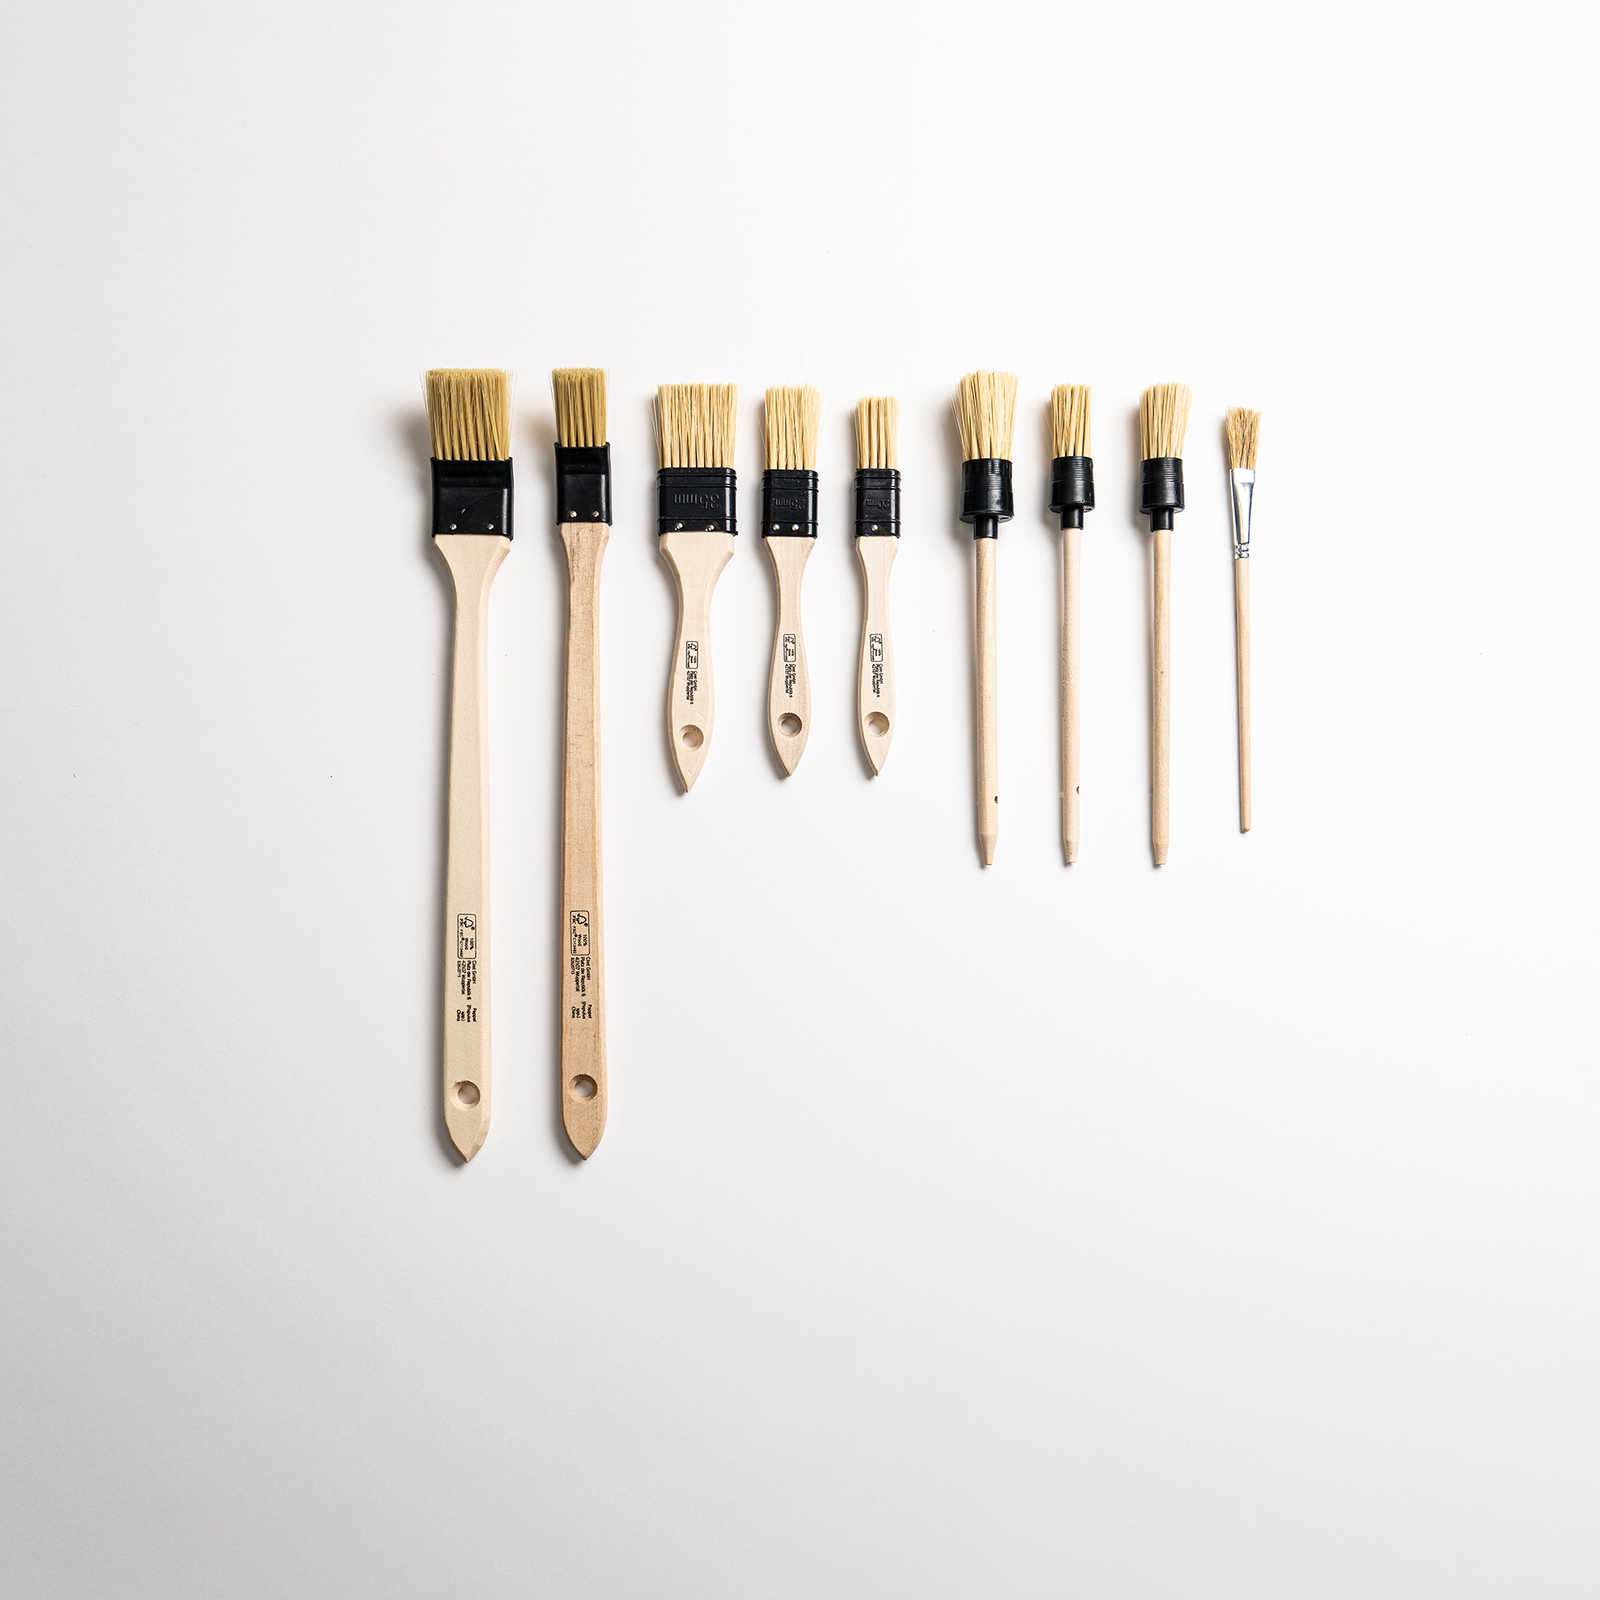 Pinsel-Set 10-teilig – hochwertige Holzstiele mit Kunstborsten
